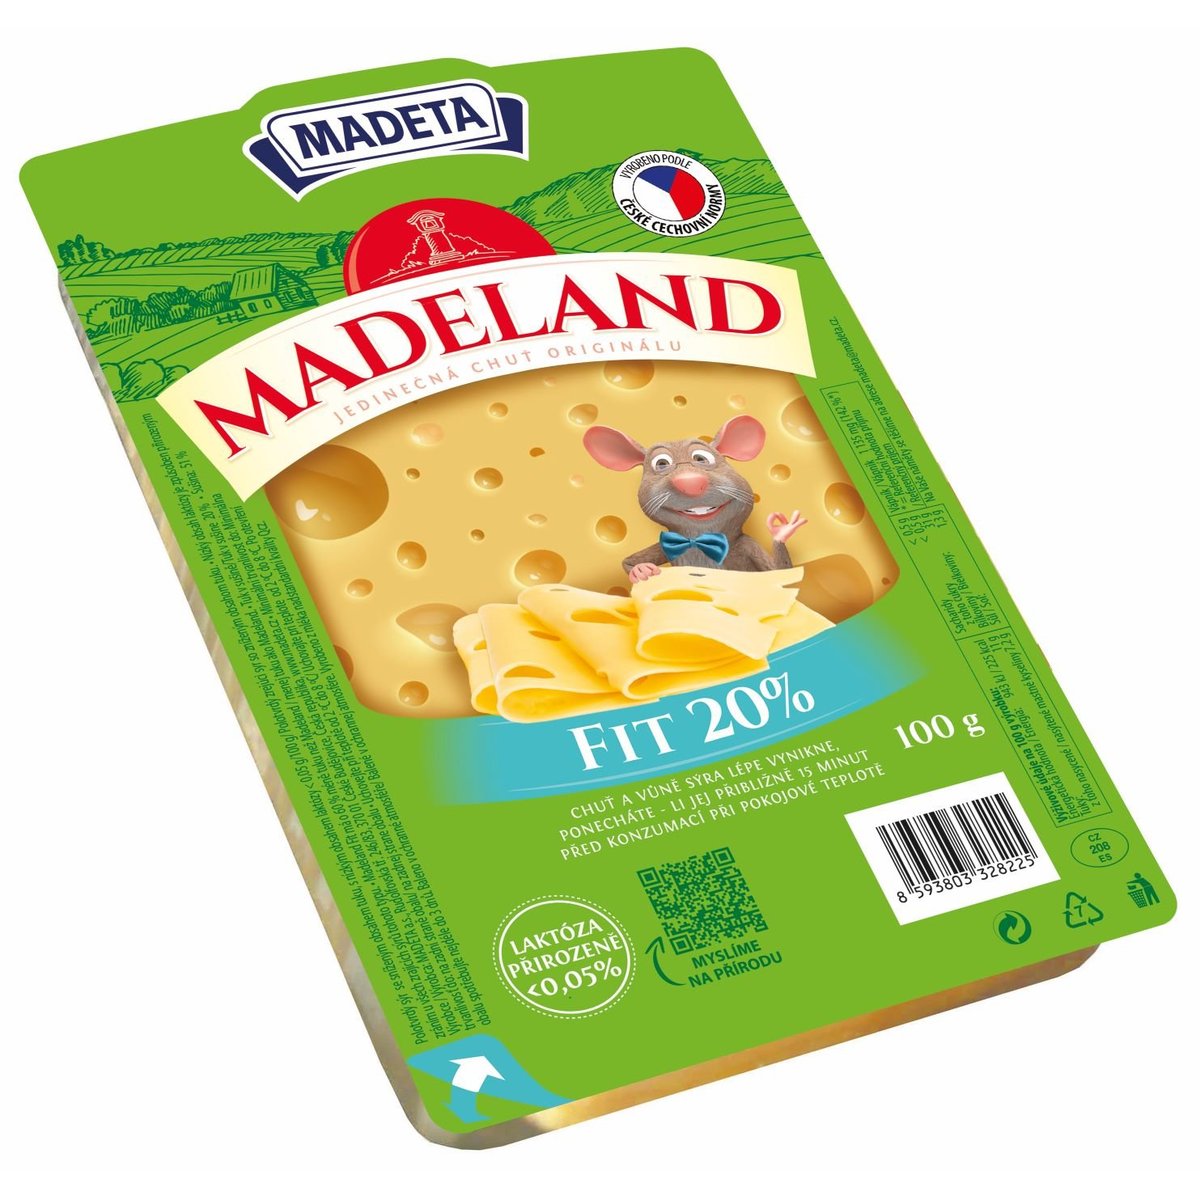 Madeta Madeland Fit 20% plátky